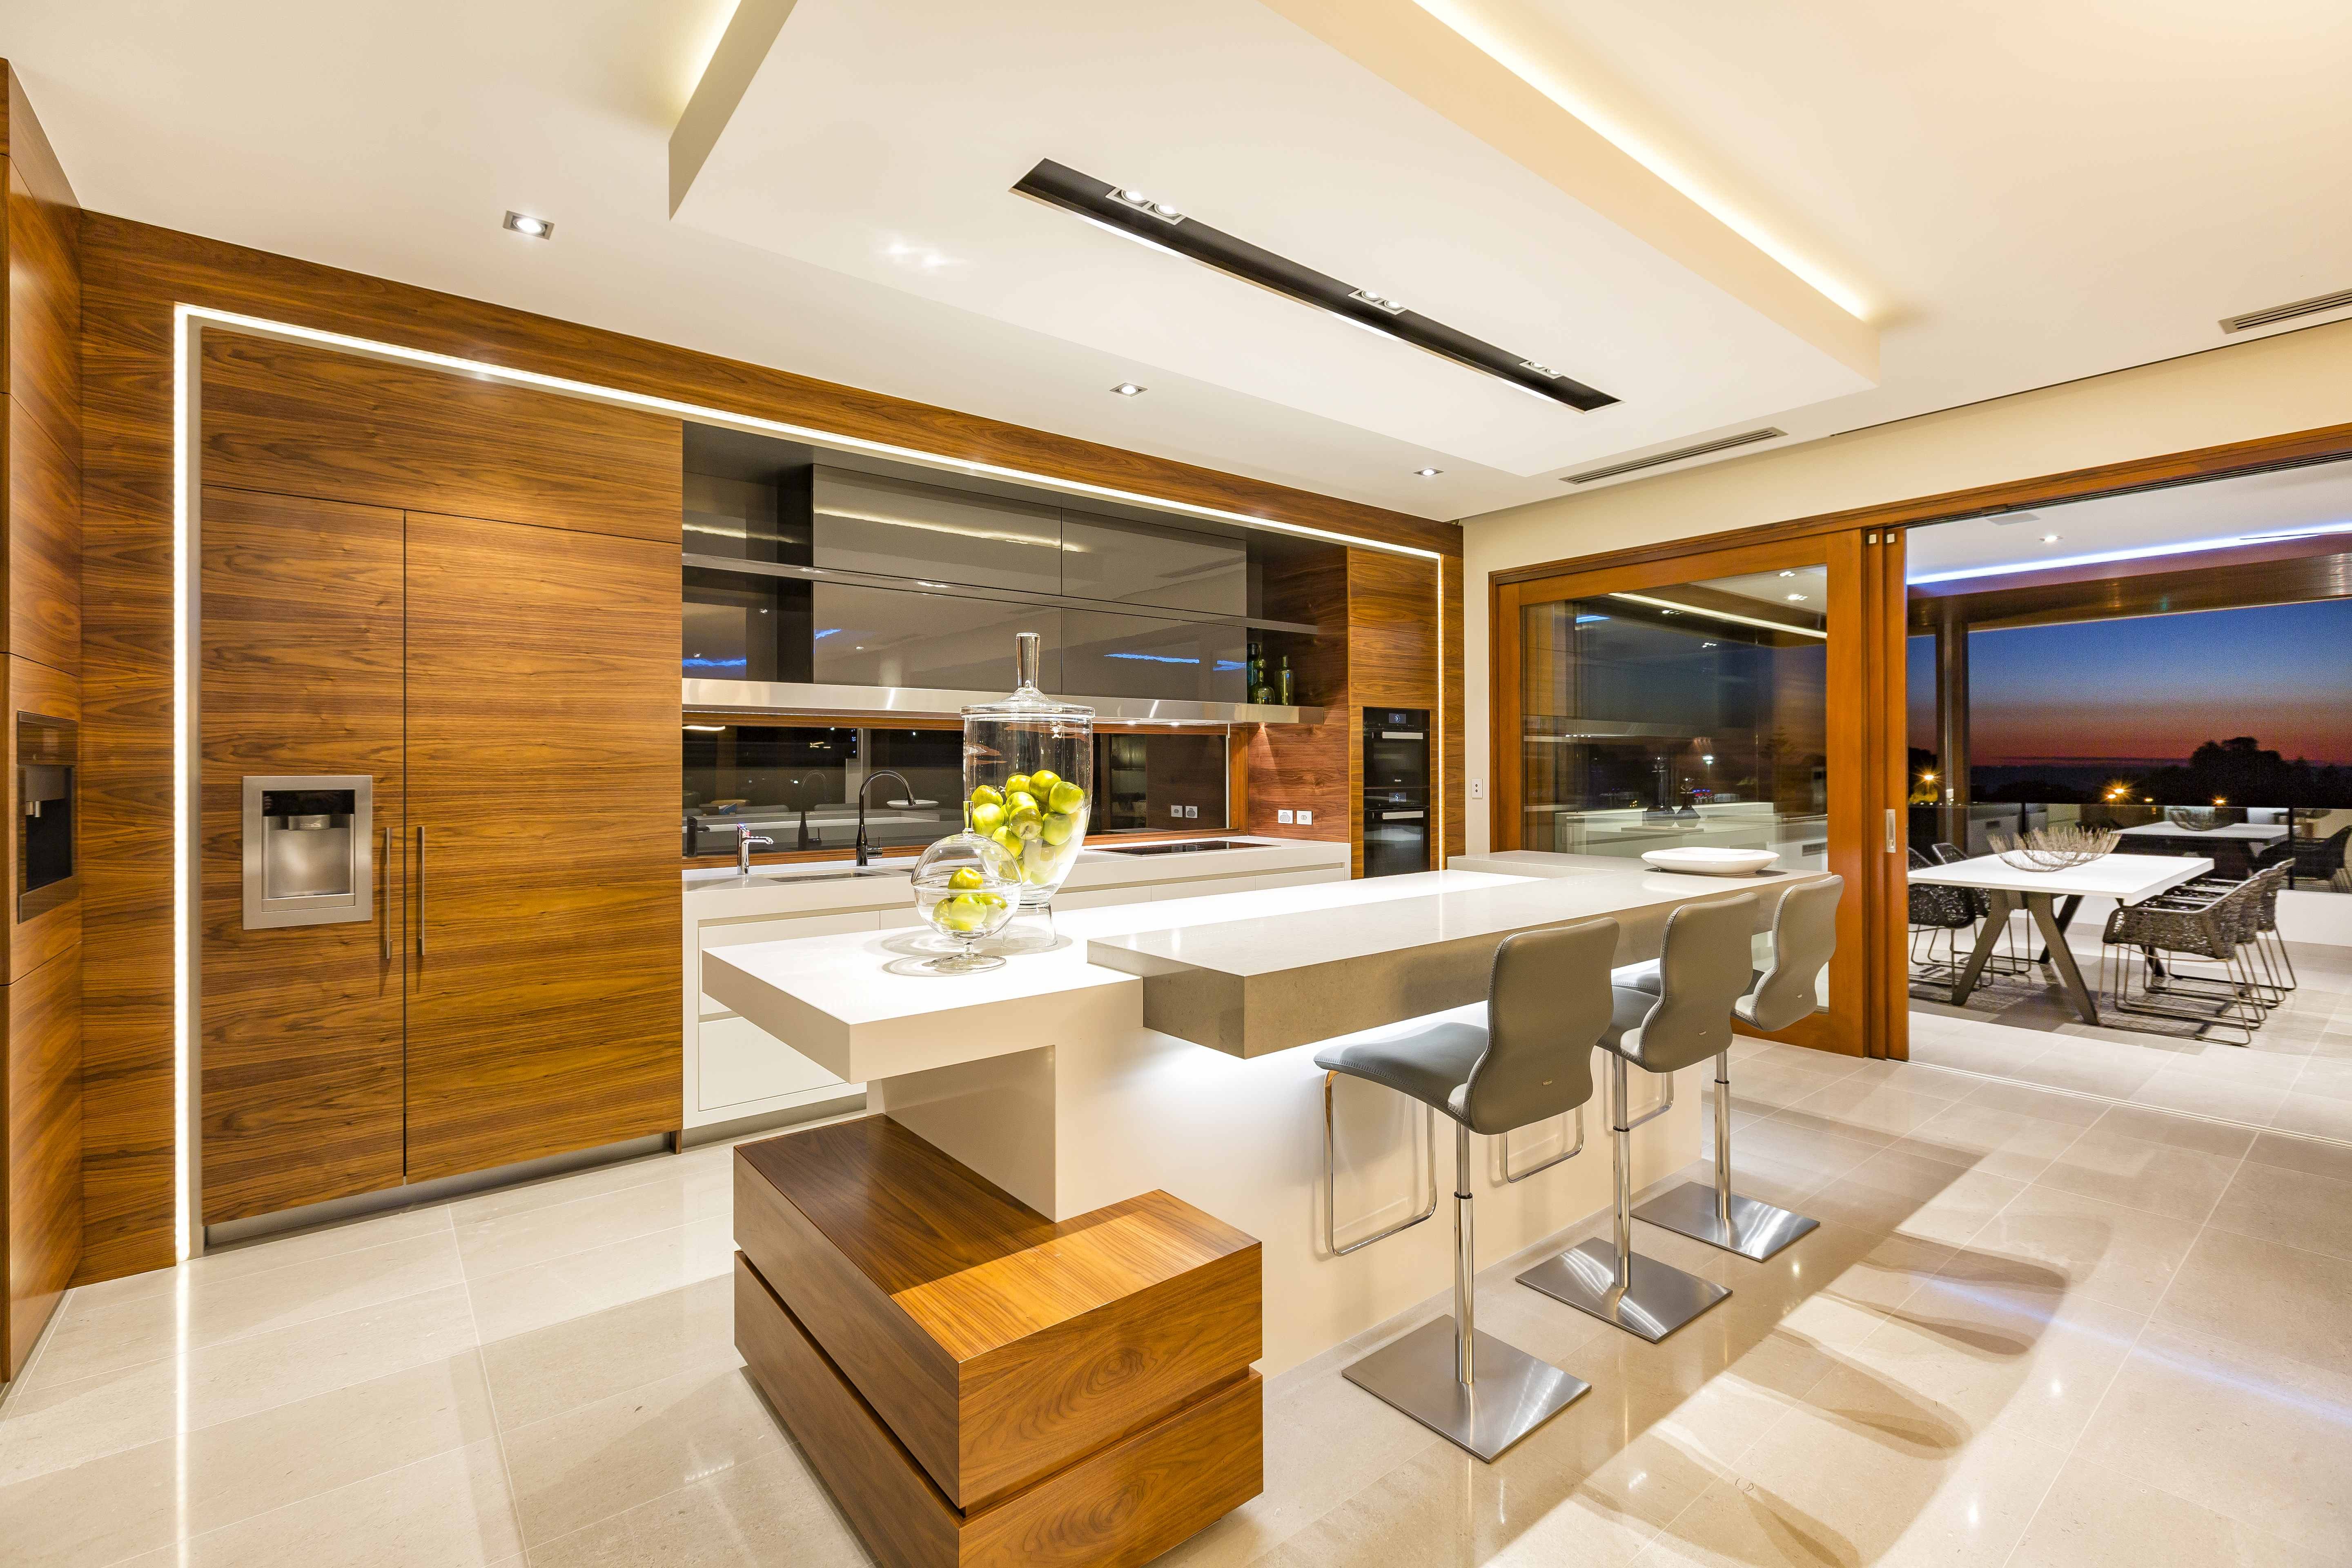 kitchen design awards australia